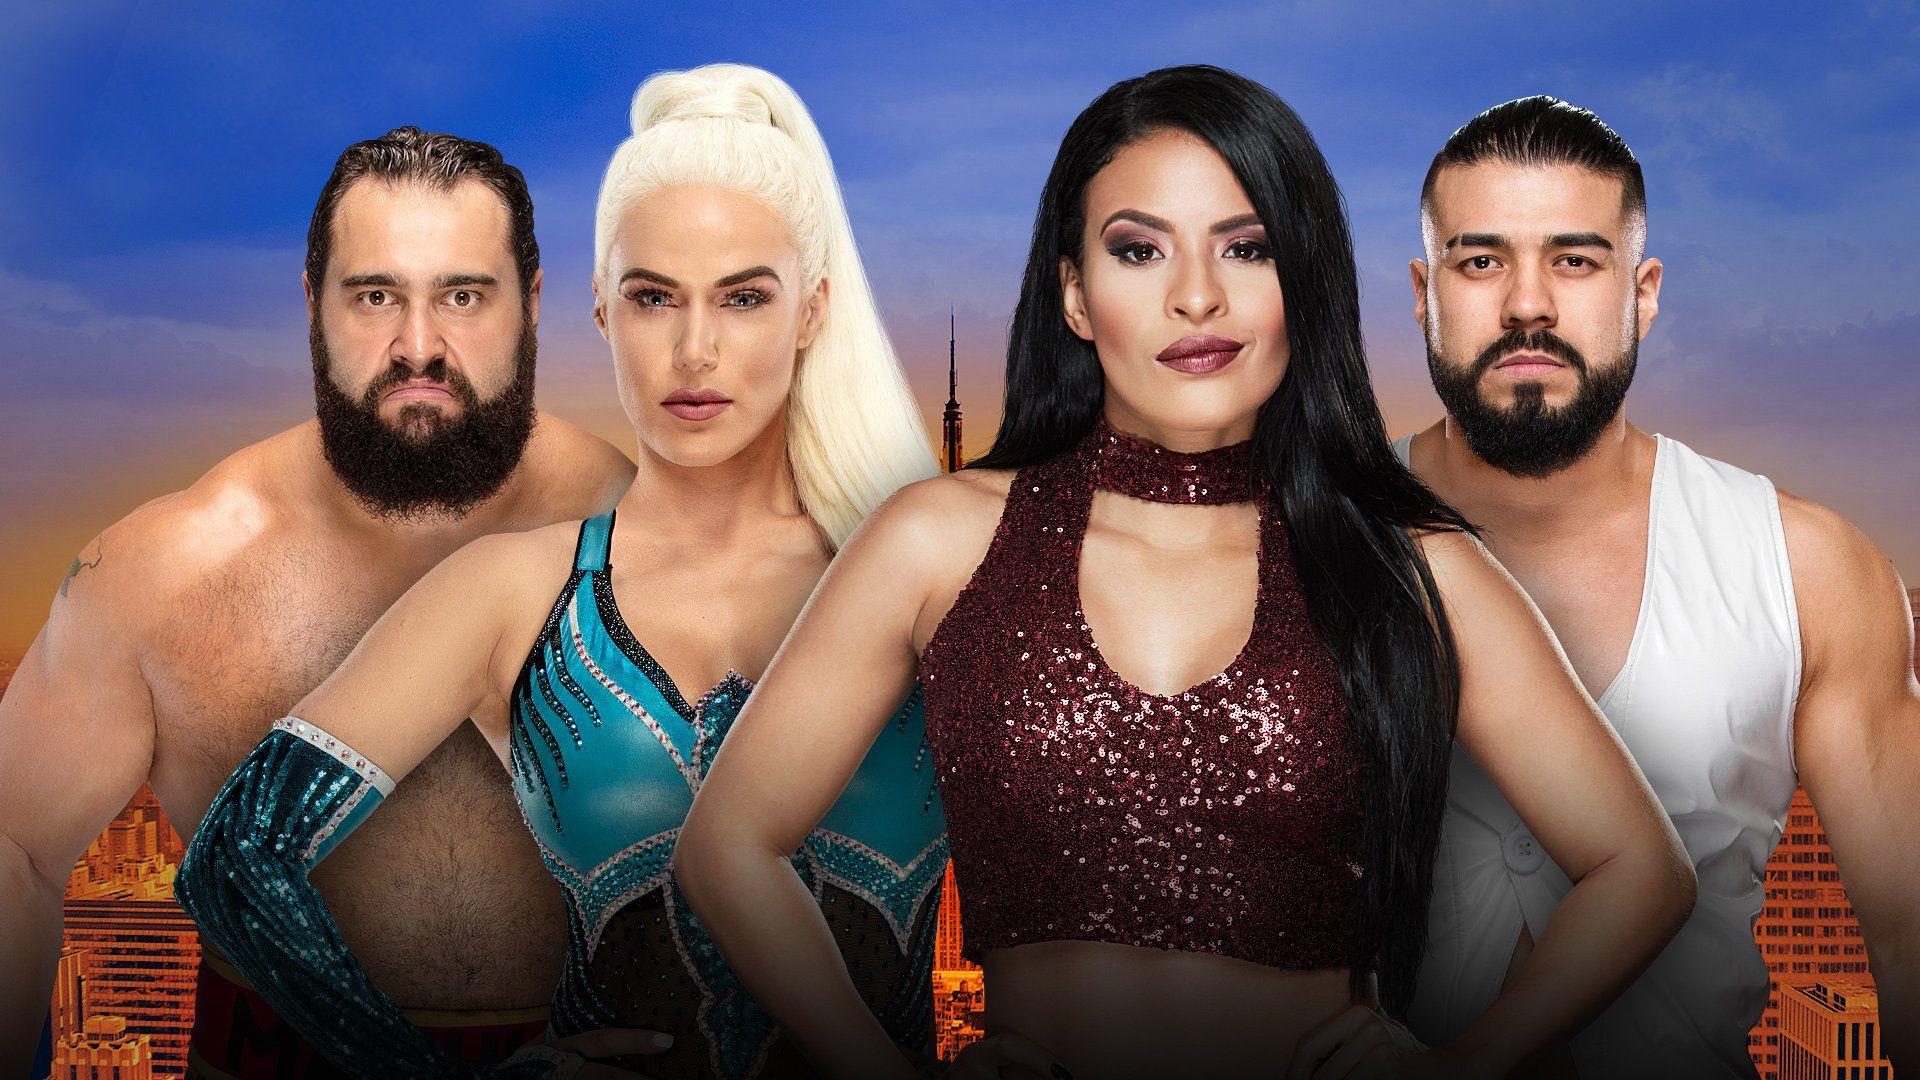 Rusev & Lana vs. Andrade “Cien” Almas & Zelina Vega Kickoff Match